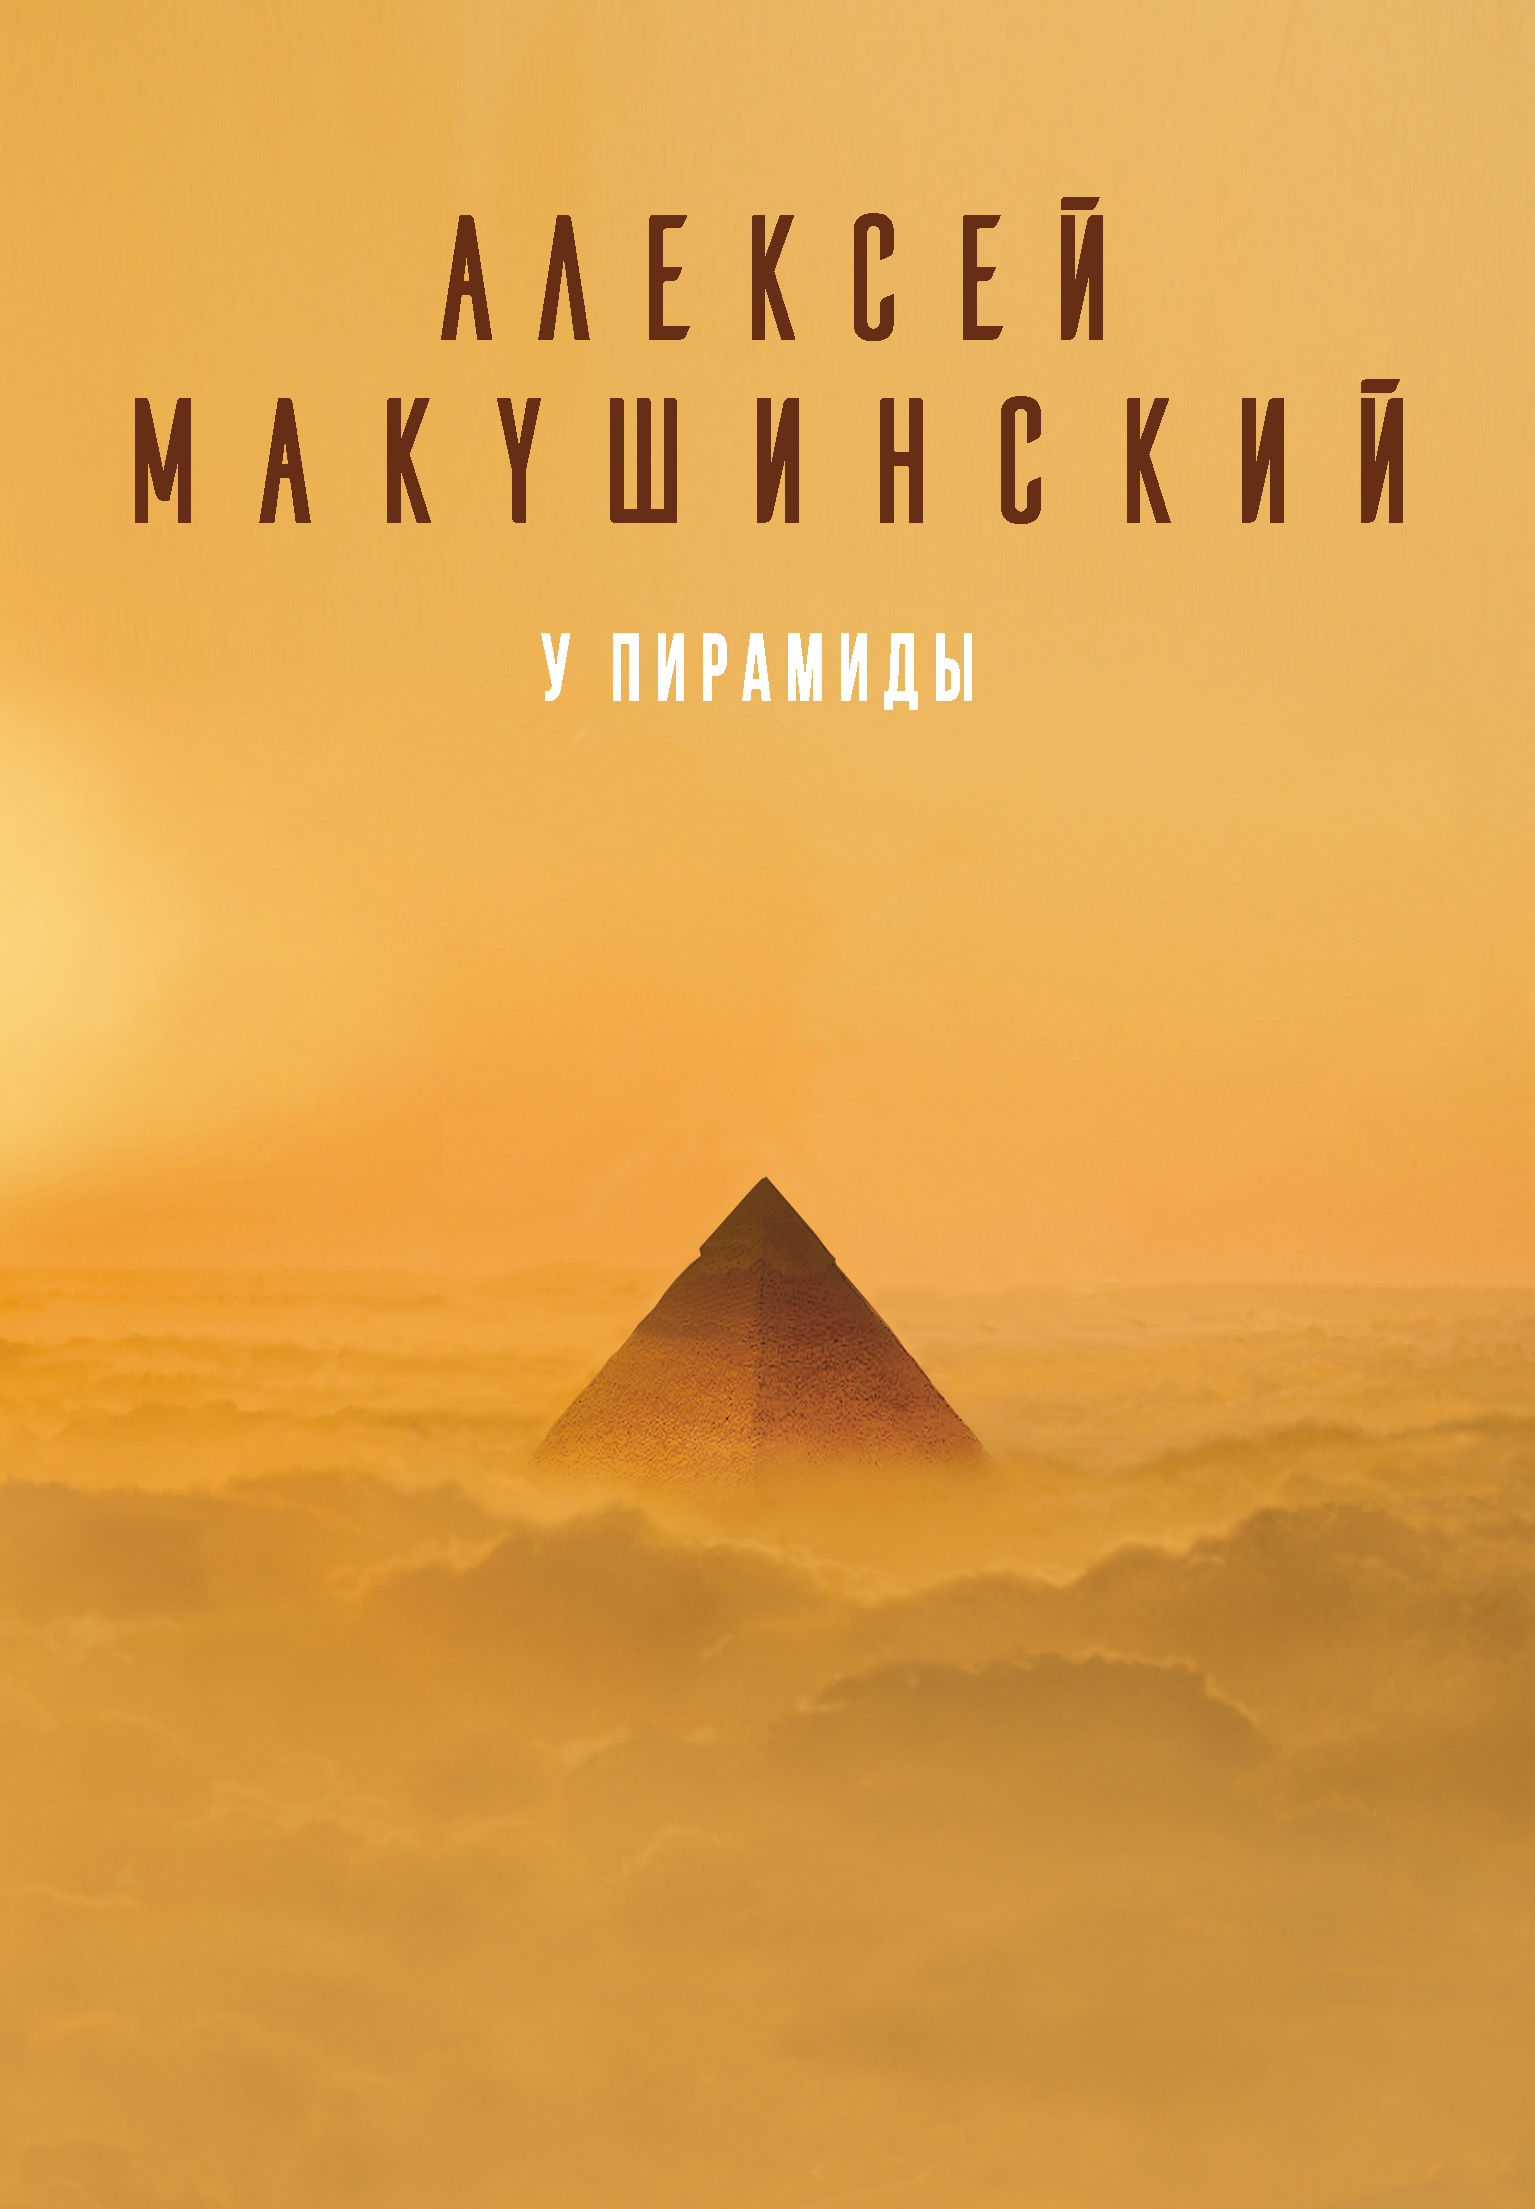 Книга У пирамиды из серии , созданная Алексей Макушинский, может относится к жанру Публицистика: прочее. Стоимость электронной книги У пирамиды с идентификатором 37986448 составляет 349.00 руб.